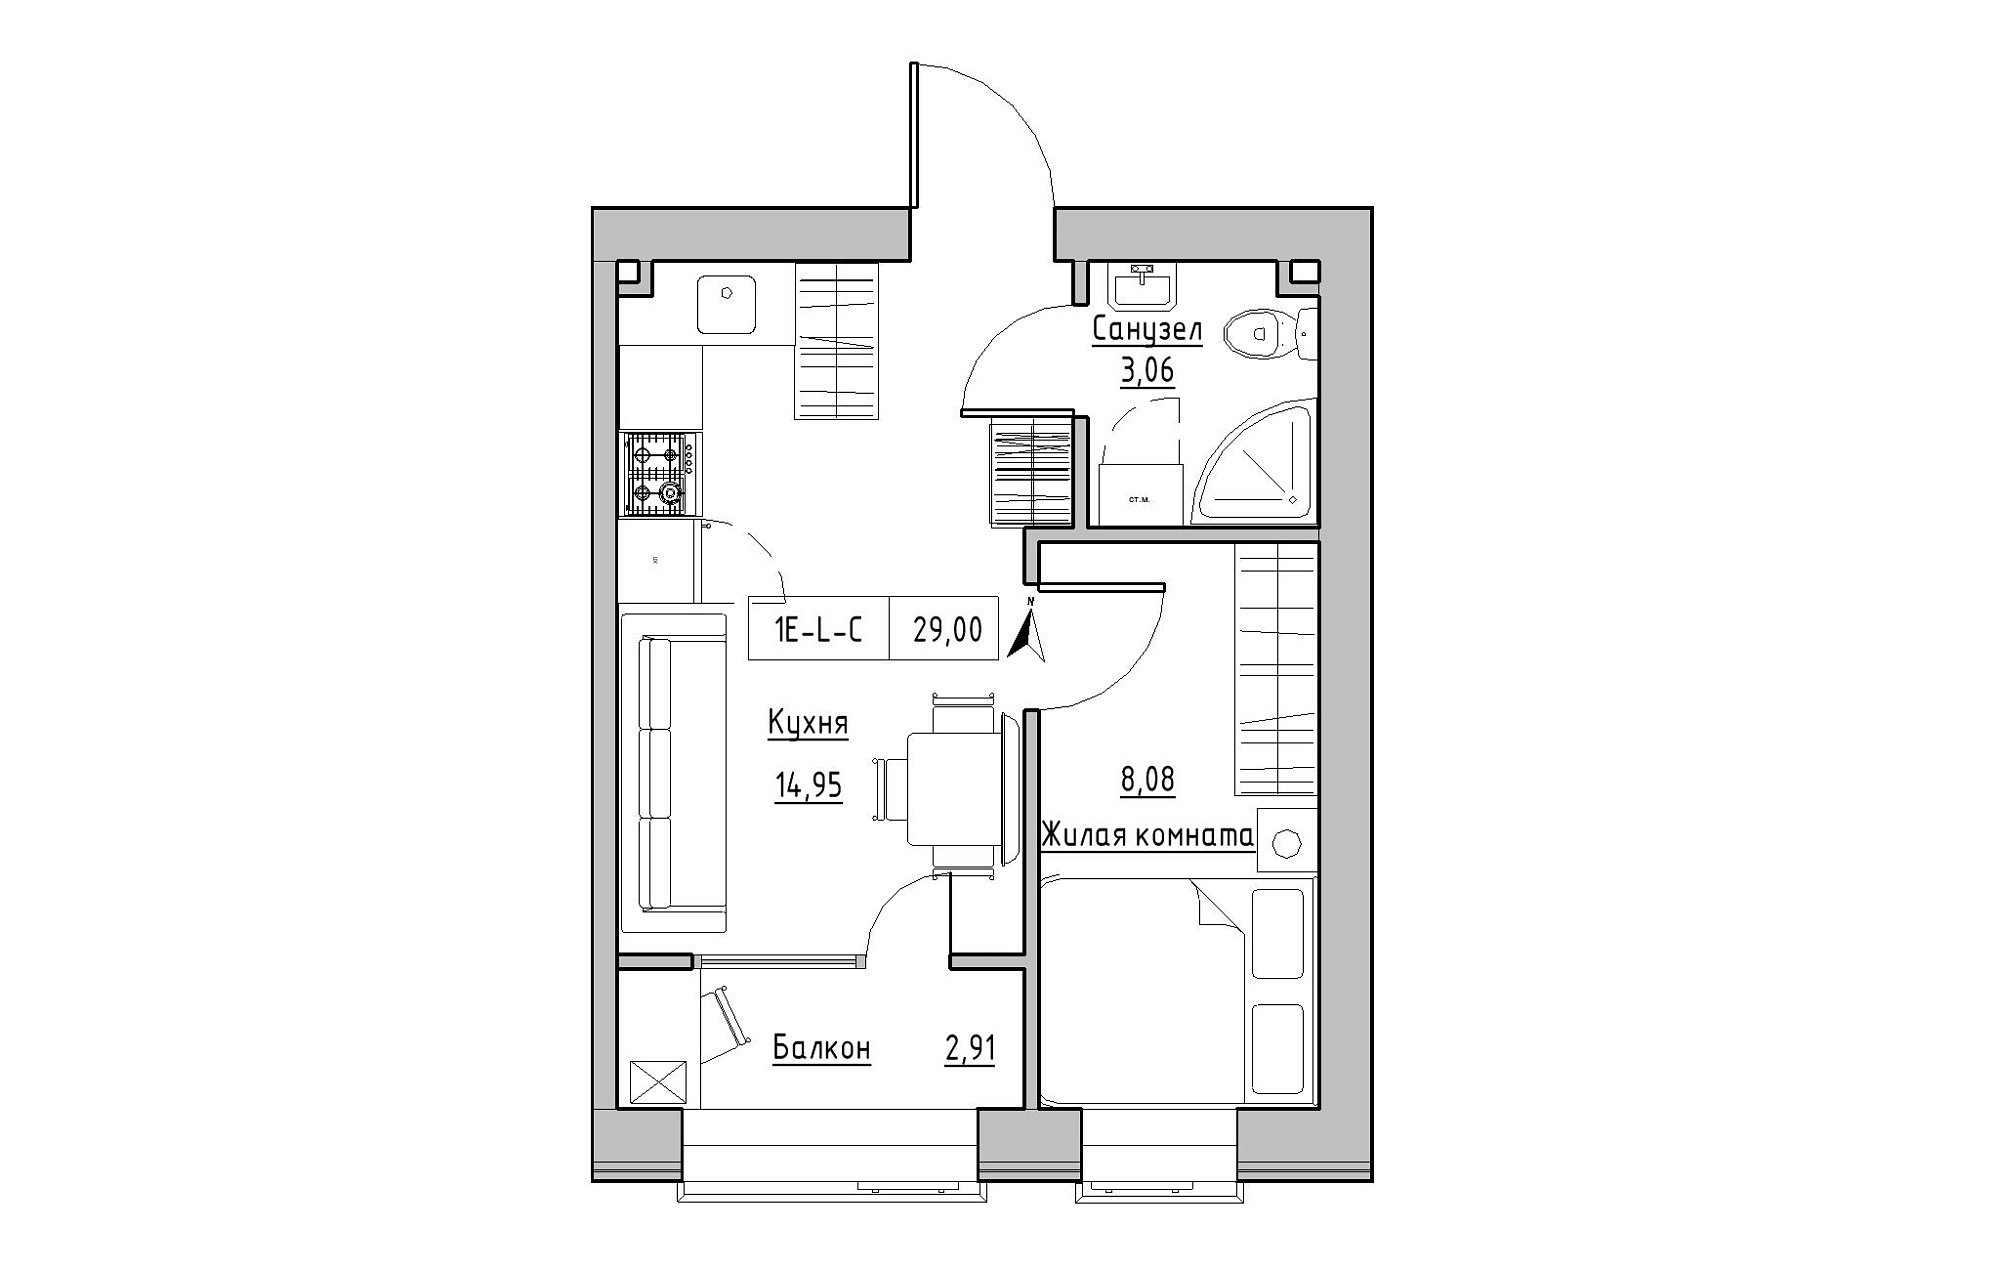 Планування 1-к квартира площею 29м2, KS-019-02/0009.